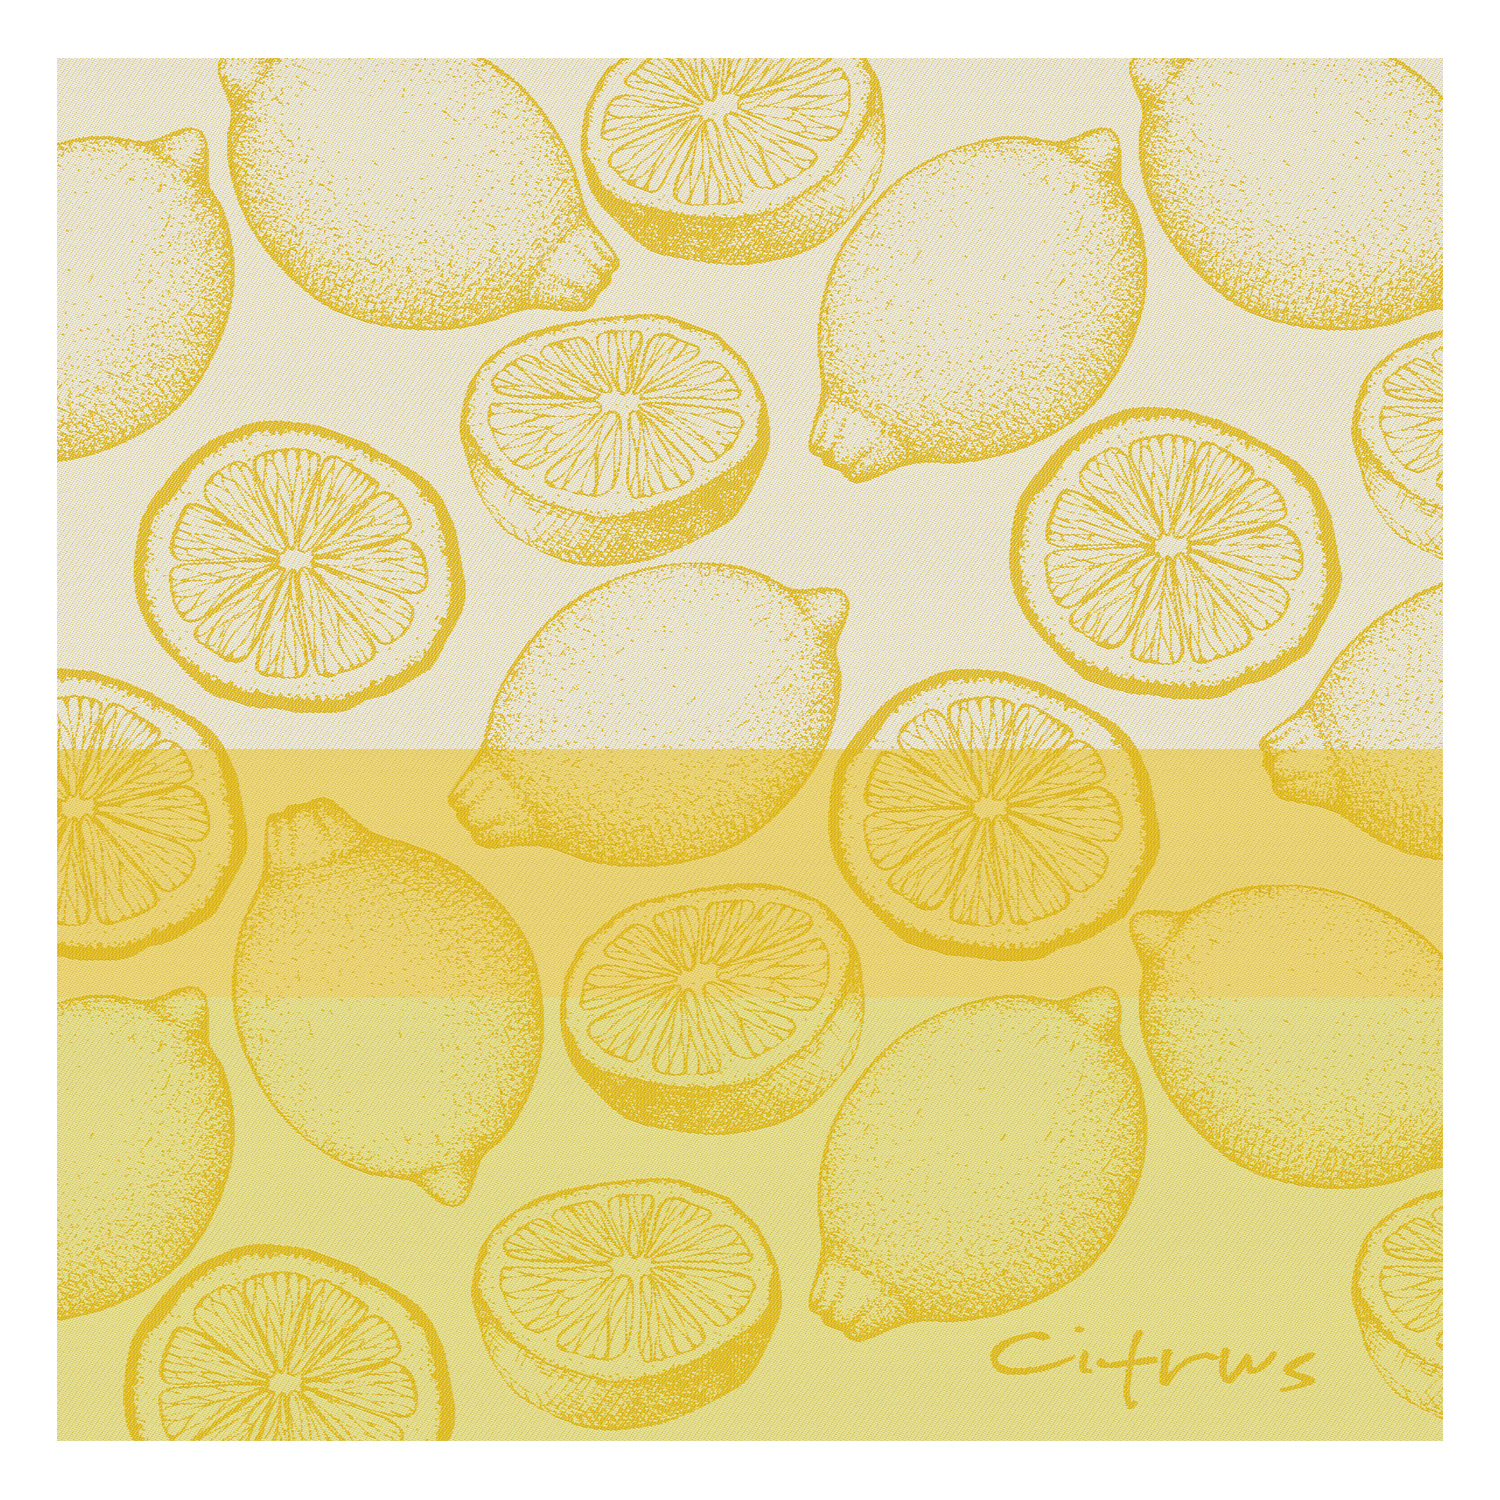 Tea Towel "Citrus"